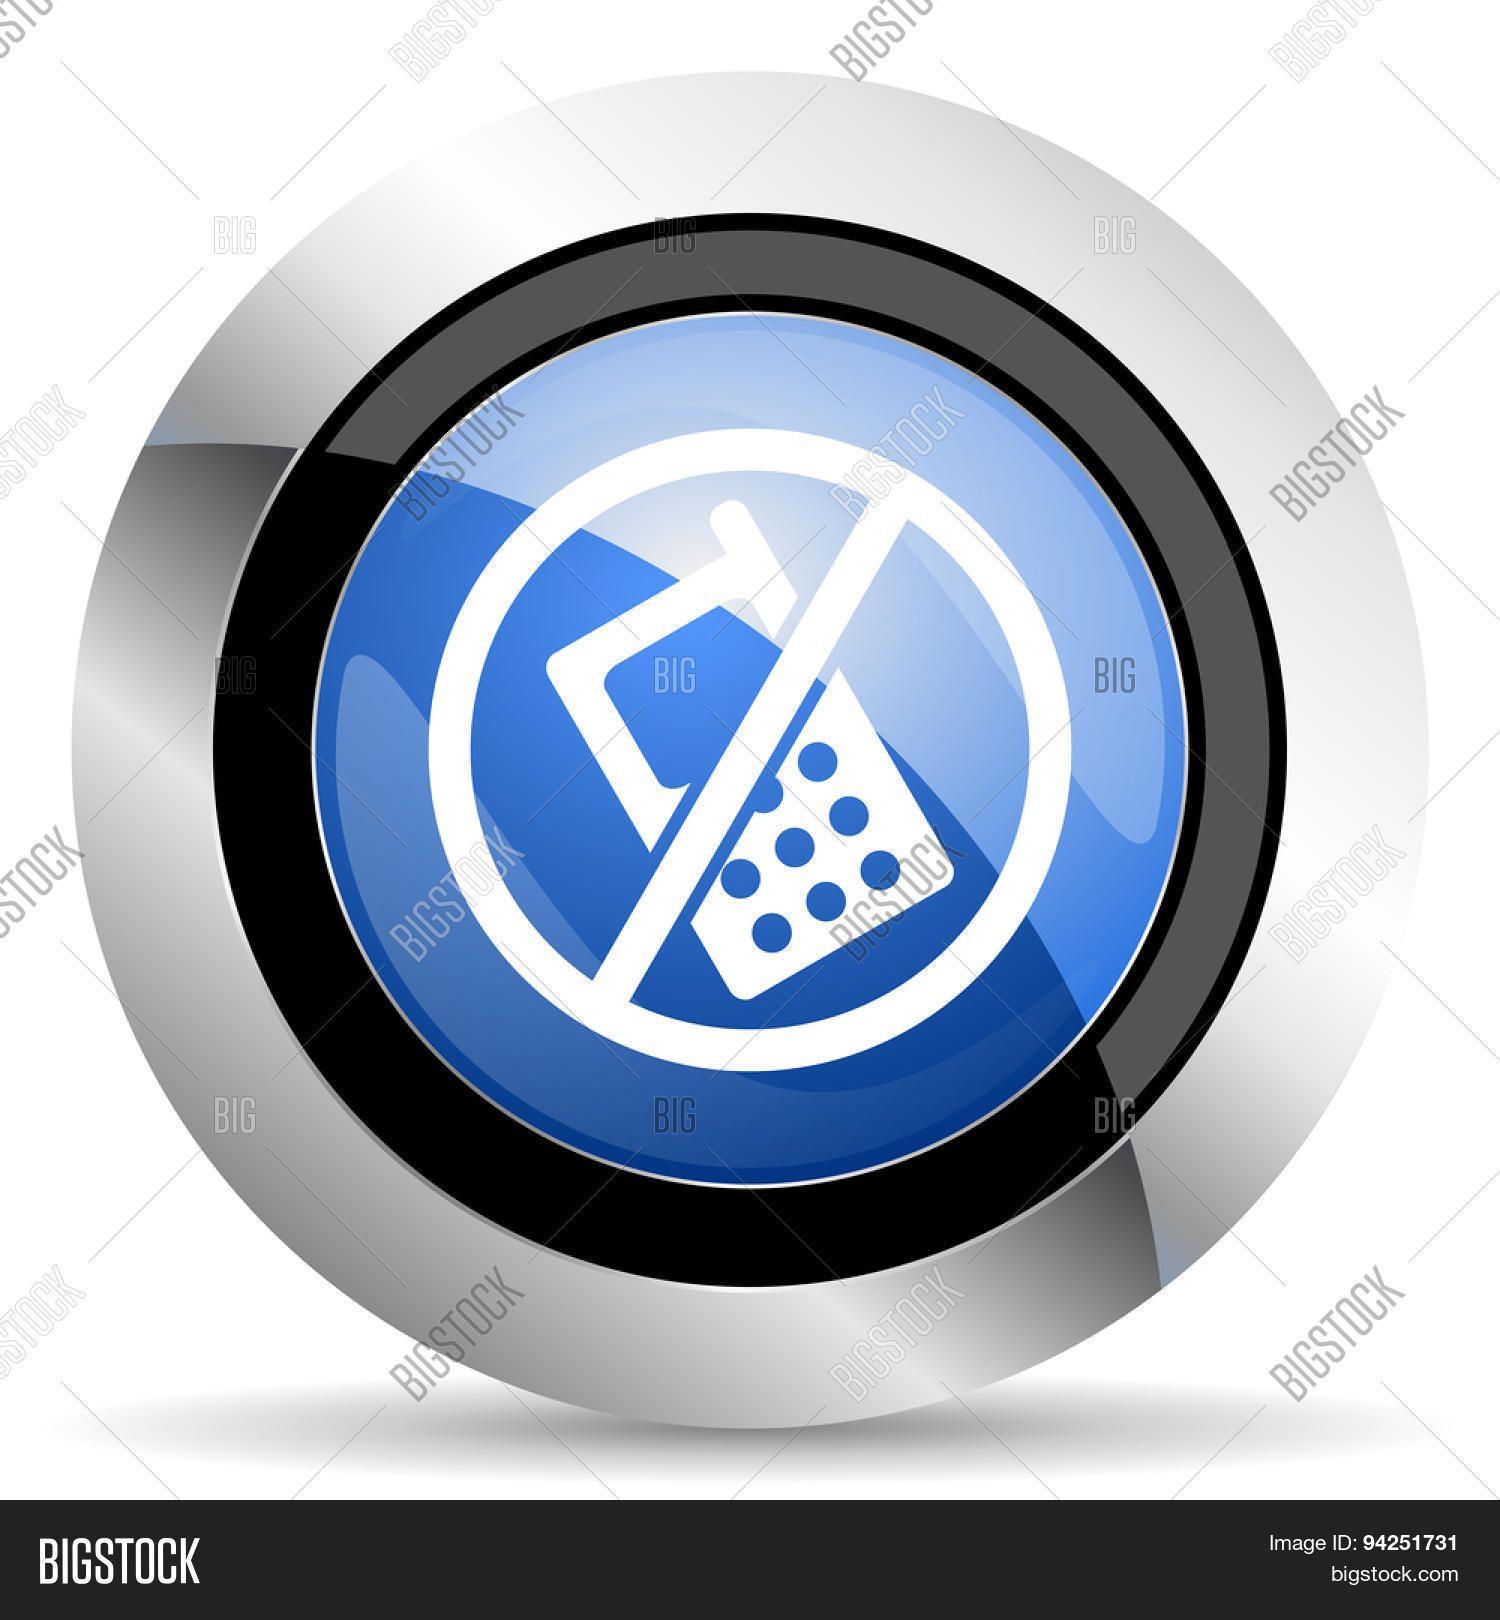 No Calls Logo - no Phone Icon no Calls Sign Original Modern Design for Image ...